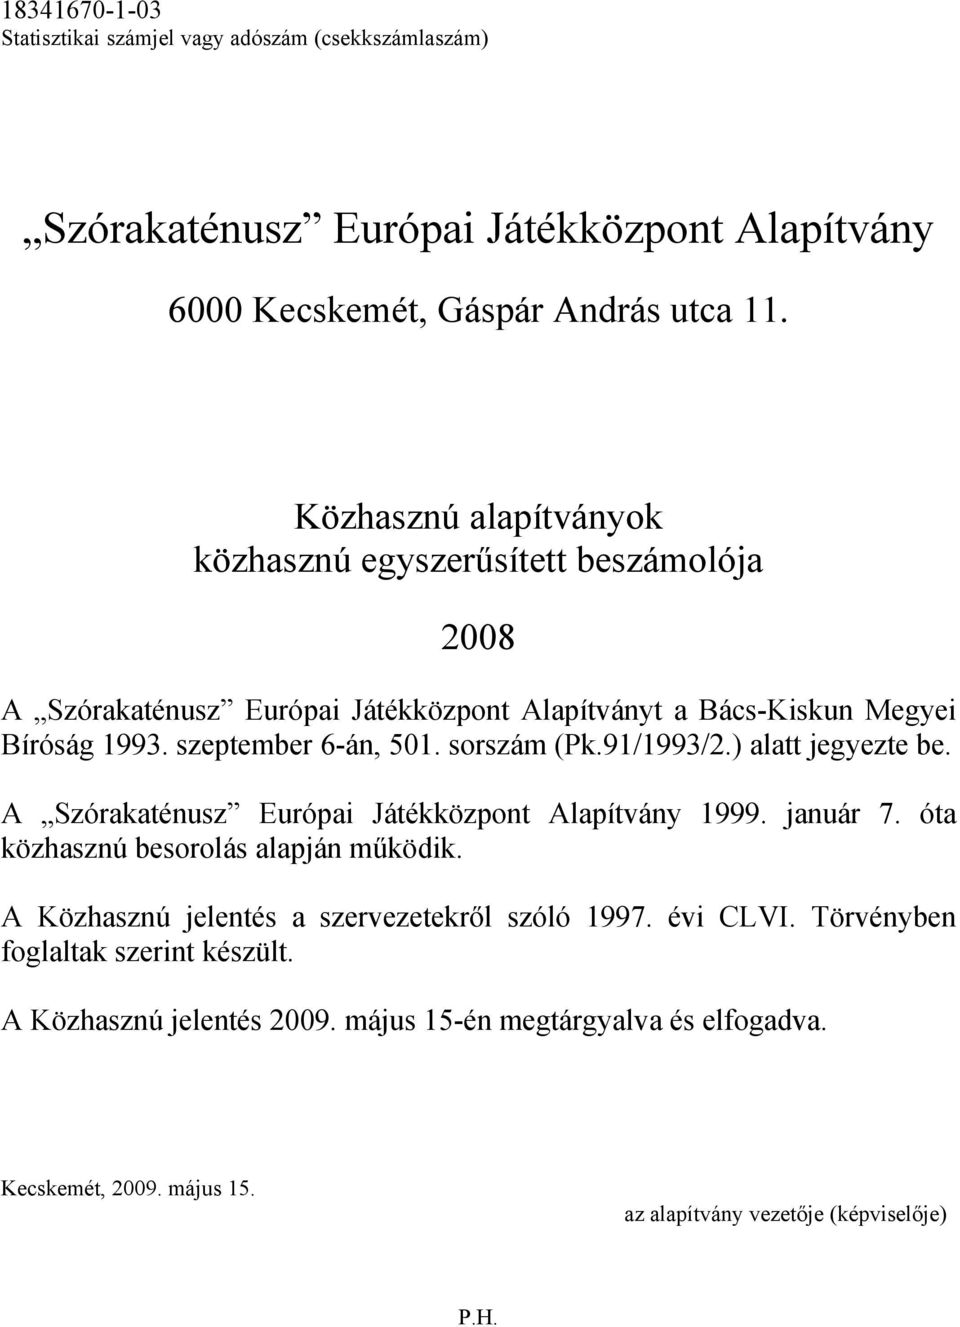 sorszám (Pk.91/1993/2.) alatt jegyezte be. A Szórakaténusz Európai Játékközpont Alapítvány 1999. január 7. óta közhasznú besorolás alapján működik.